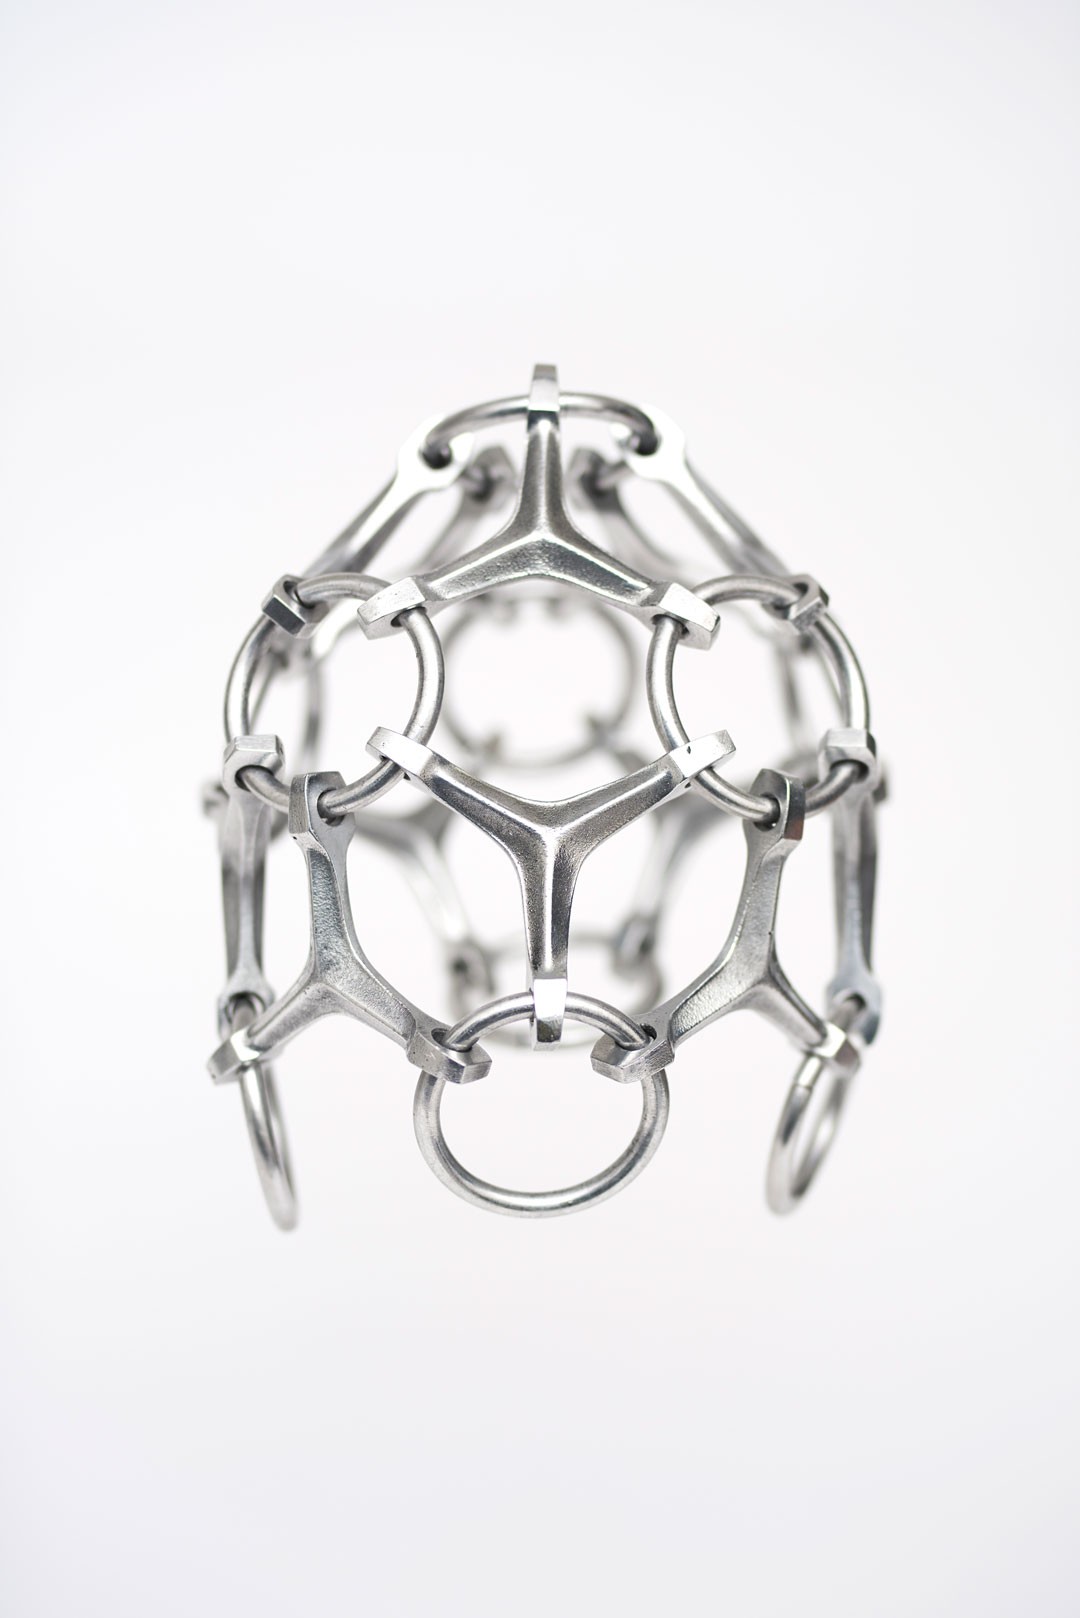 <BODY><div>AND_i – Andreas Eberharter, Triangle Mask, 2020</div><div>Aluminium, gegossen</div><div>© Andreas Eberharter</div></BODY>